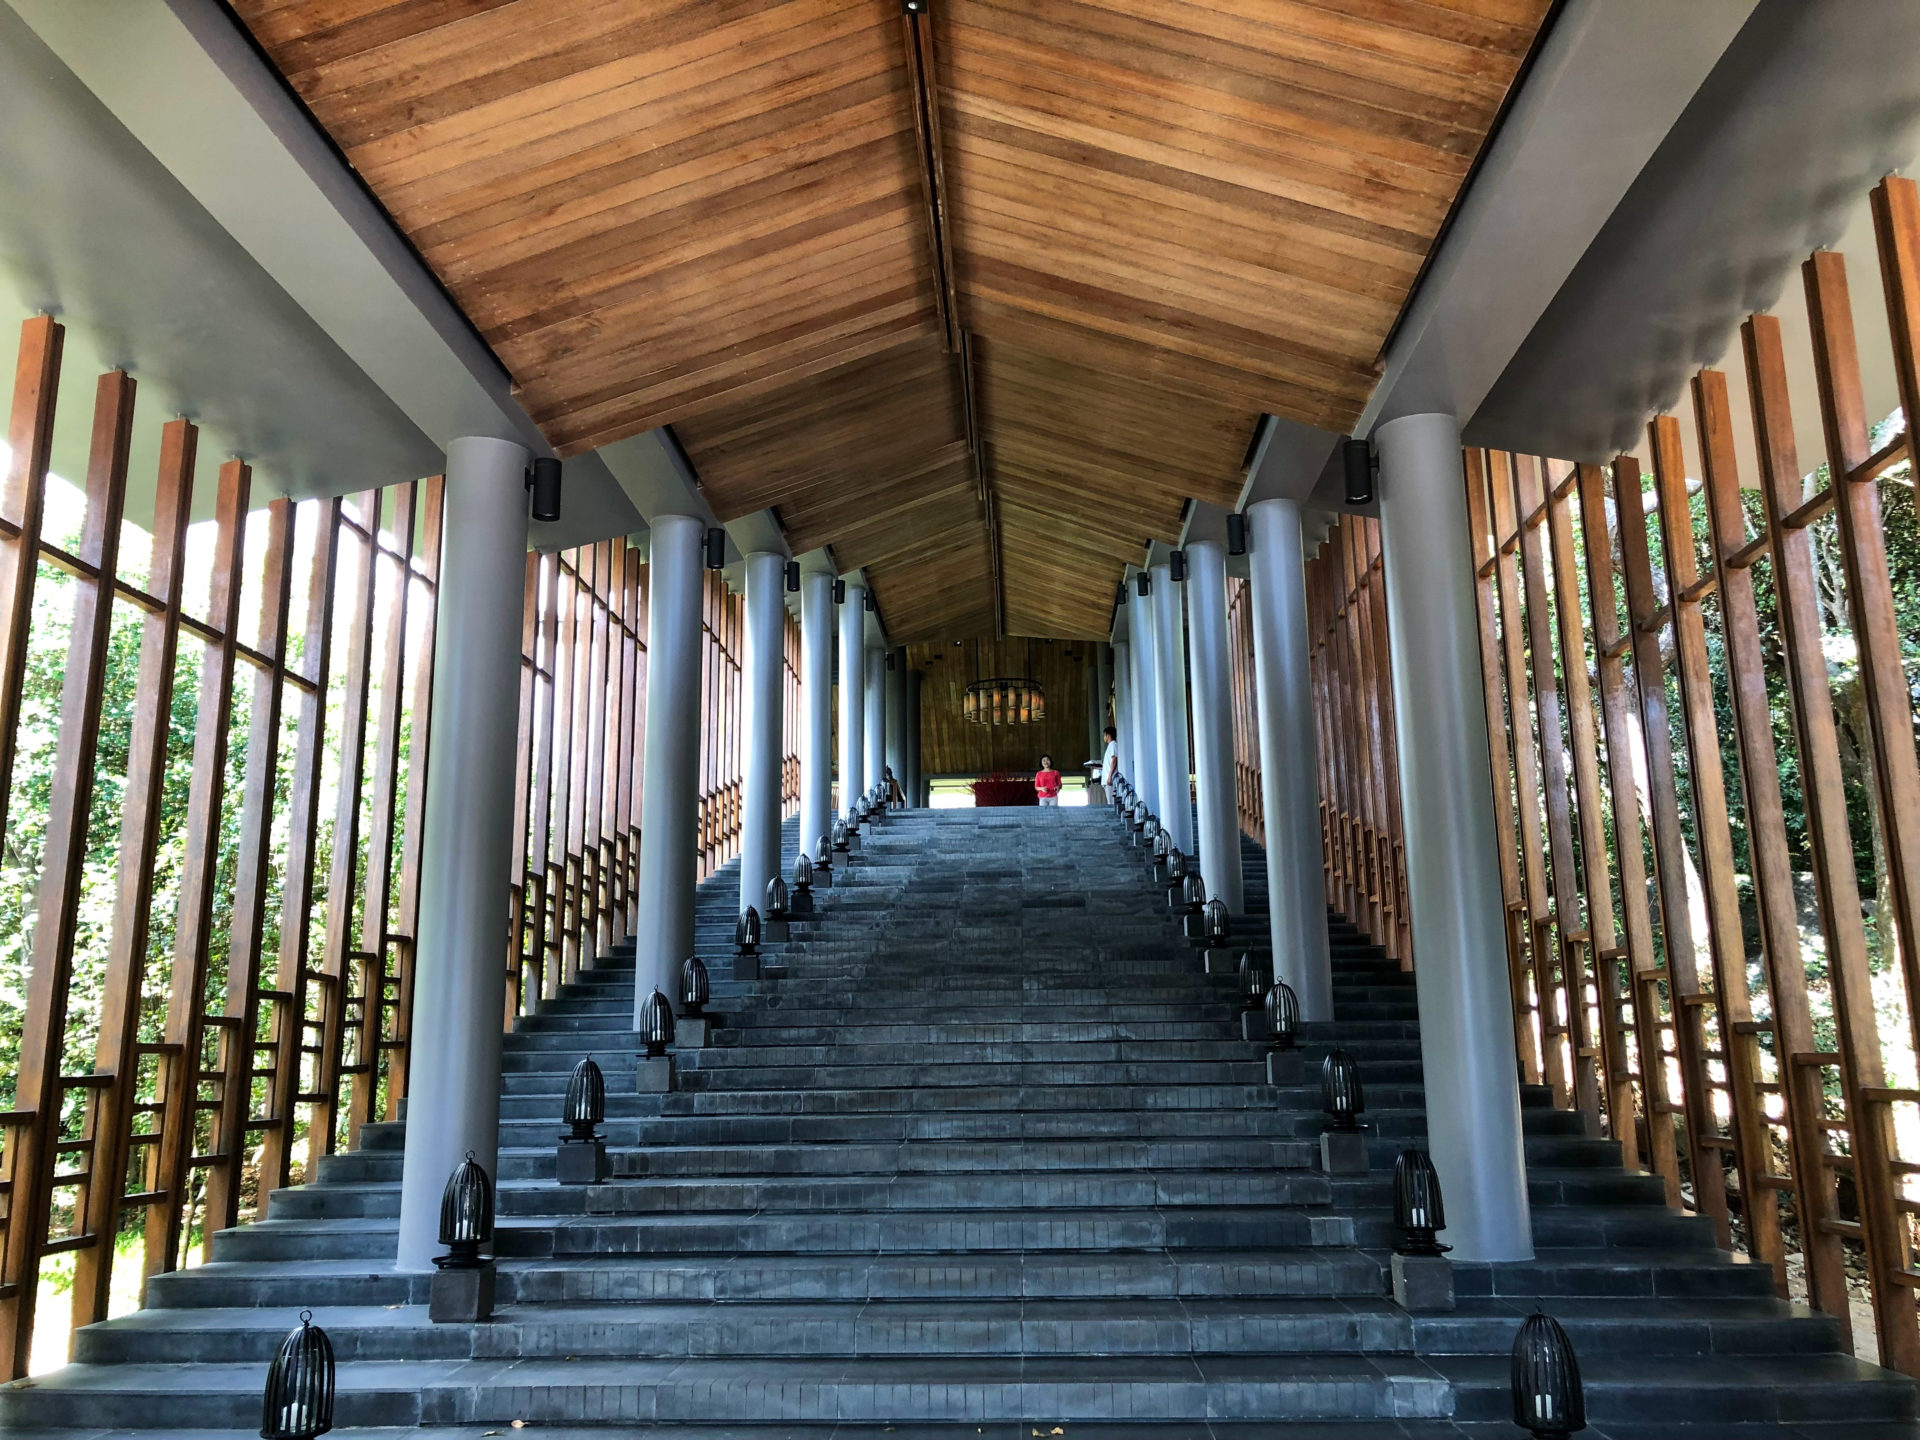 Aufgang zum Amanoi Hotel in Vietnam mit tempelartiger Architektur